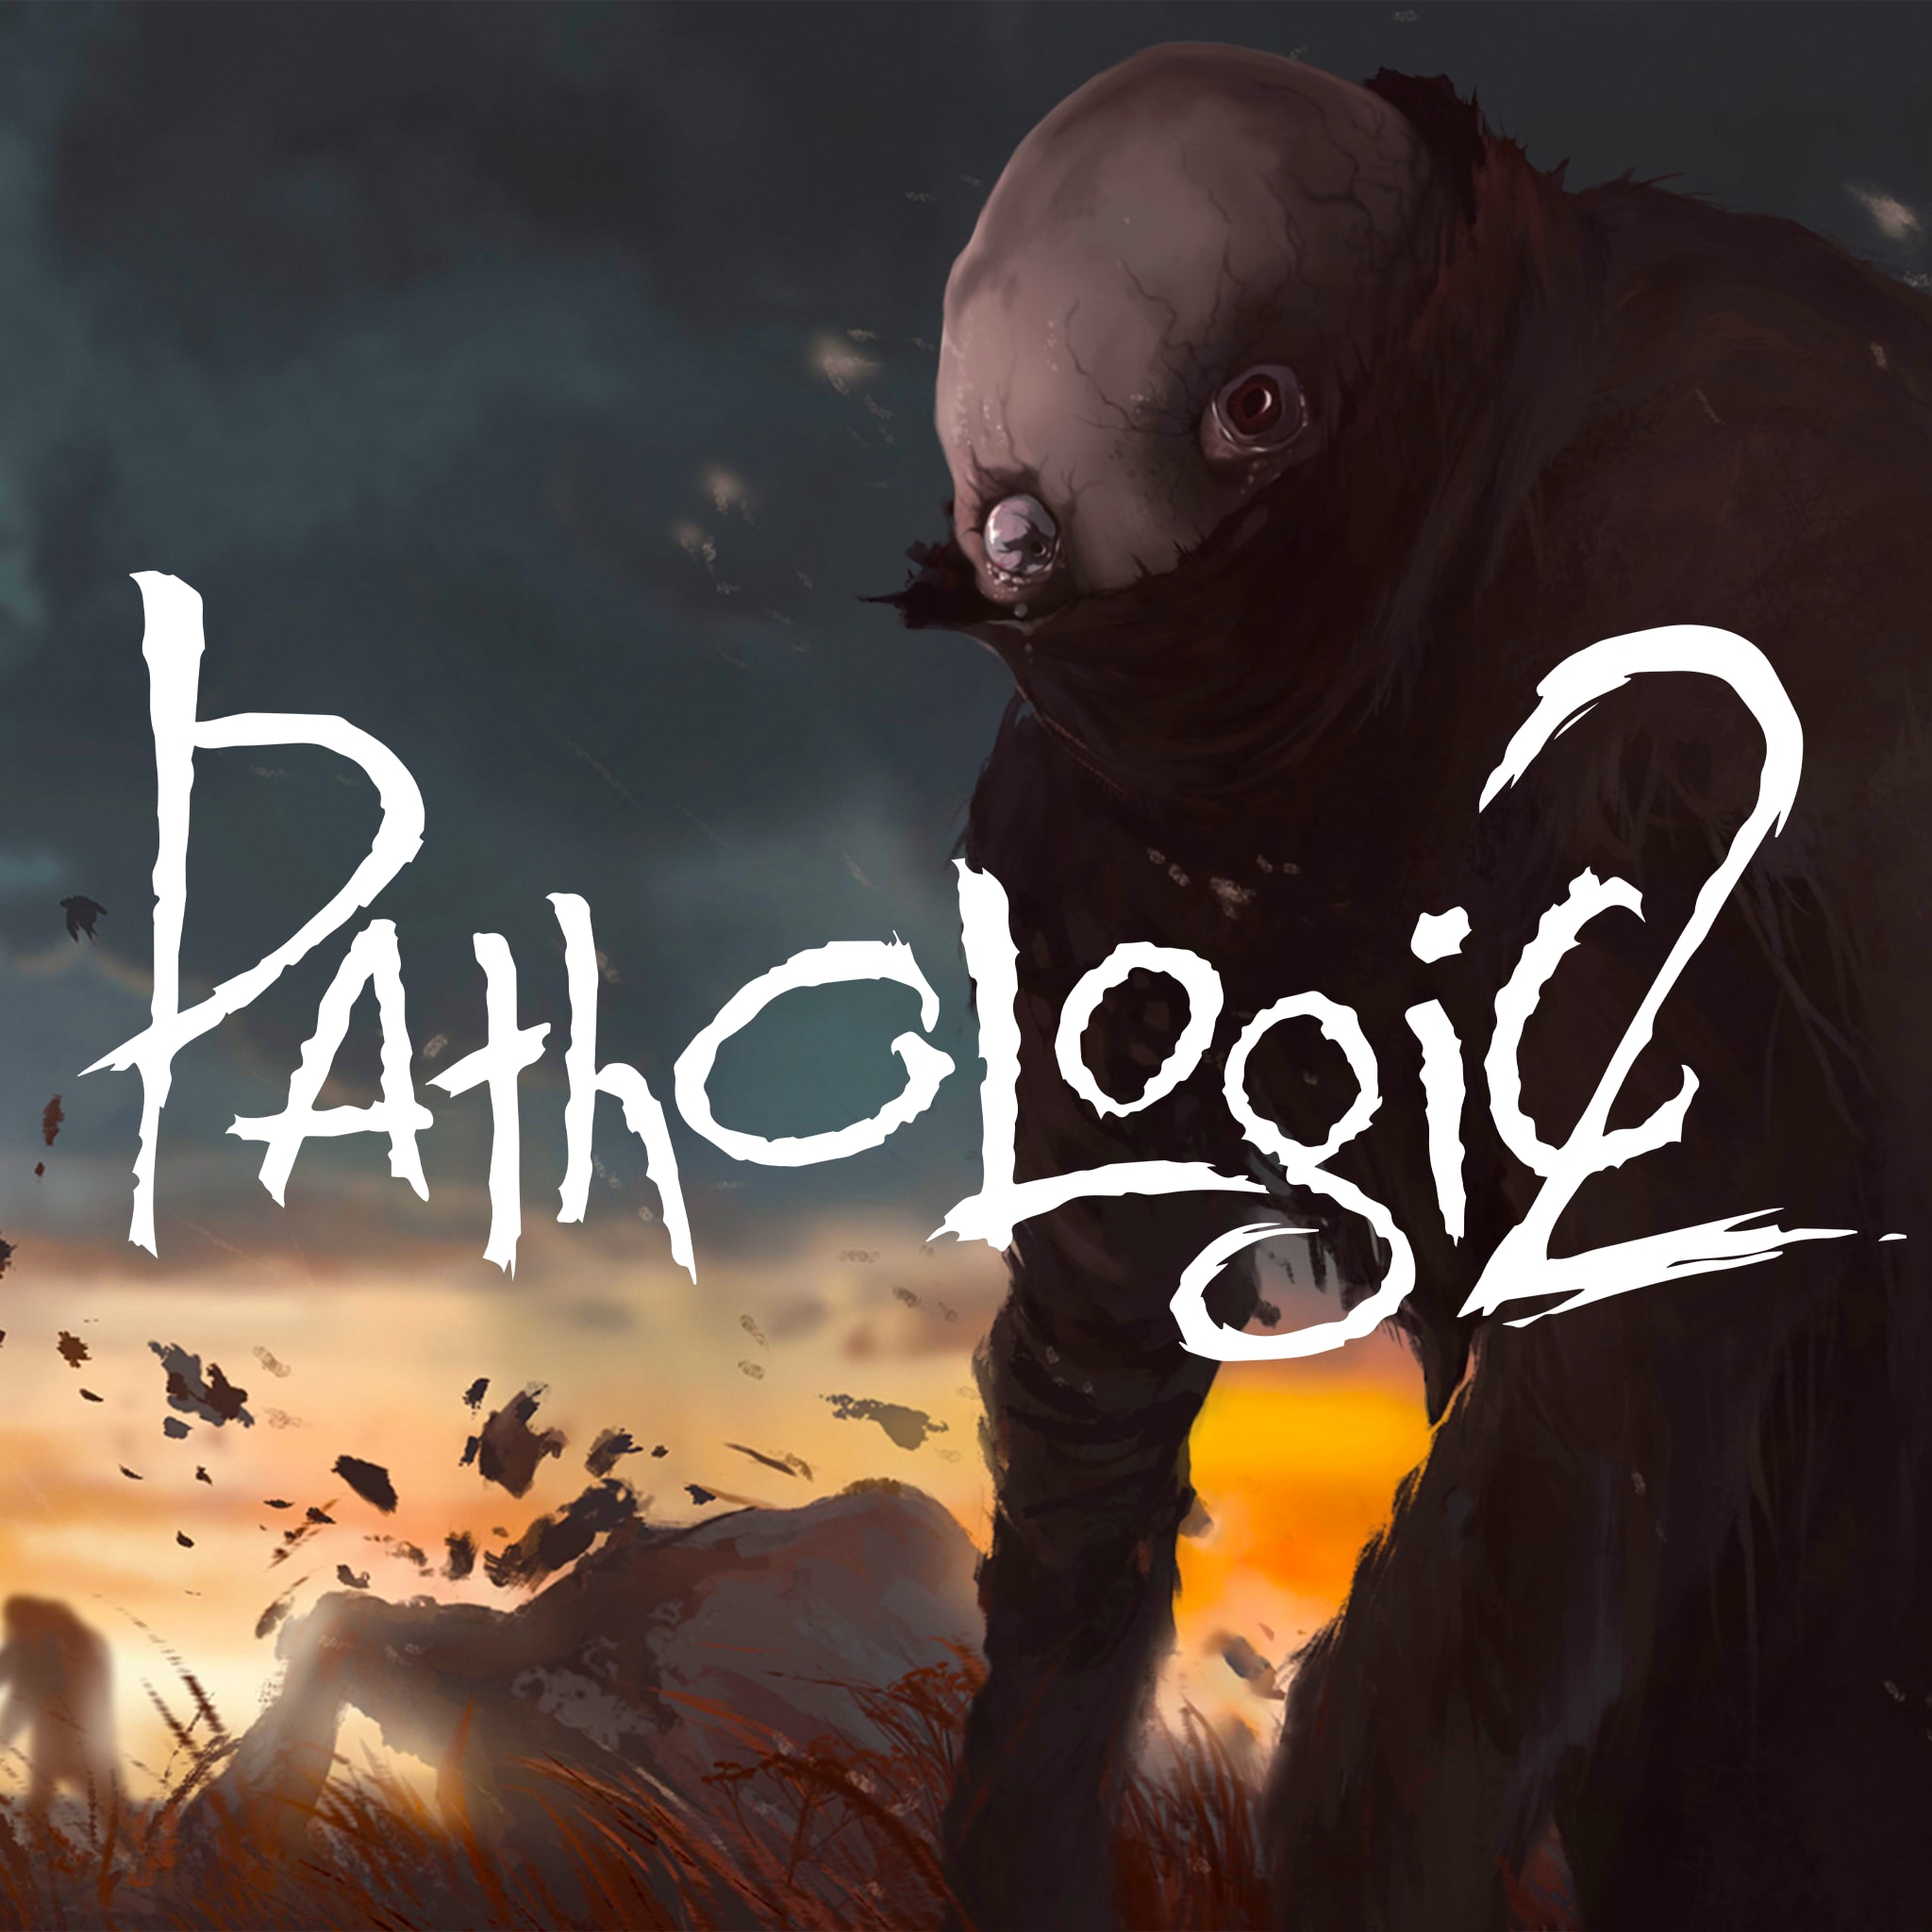 pathologic 2 ps4 store